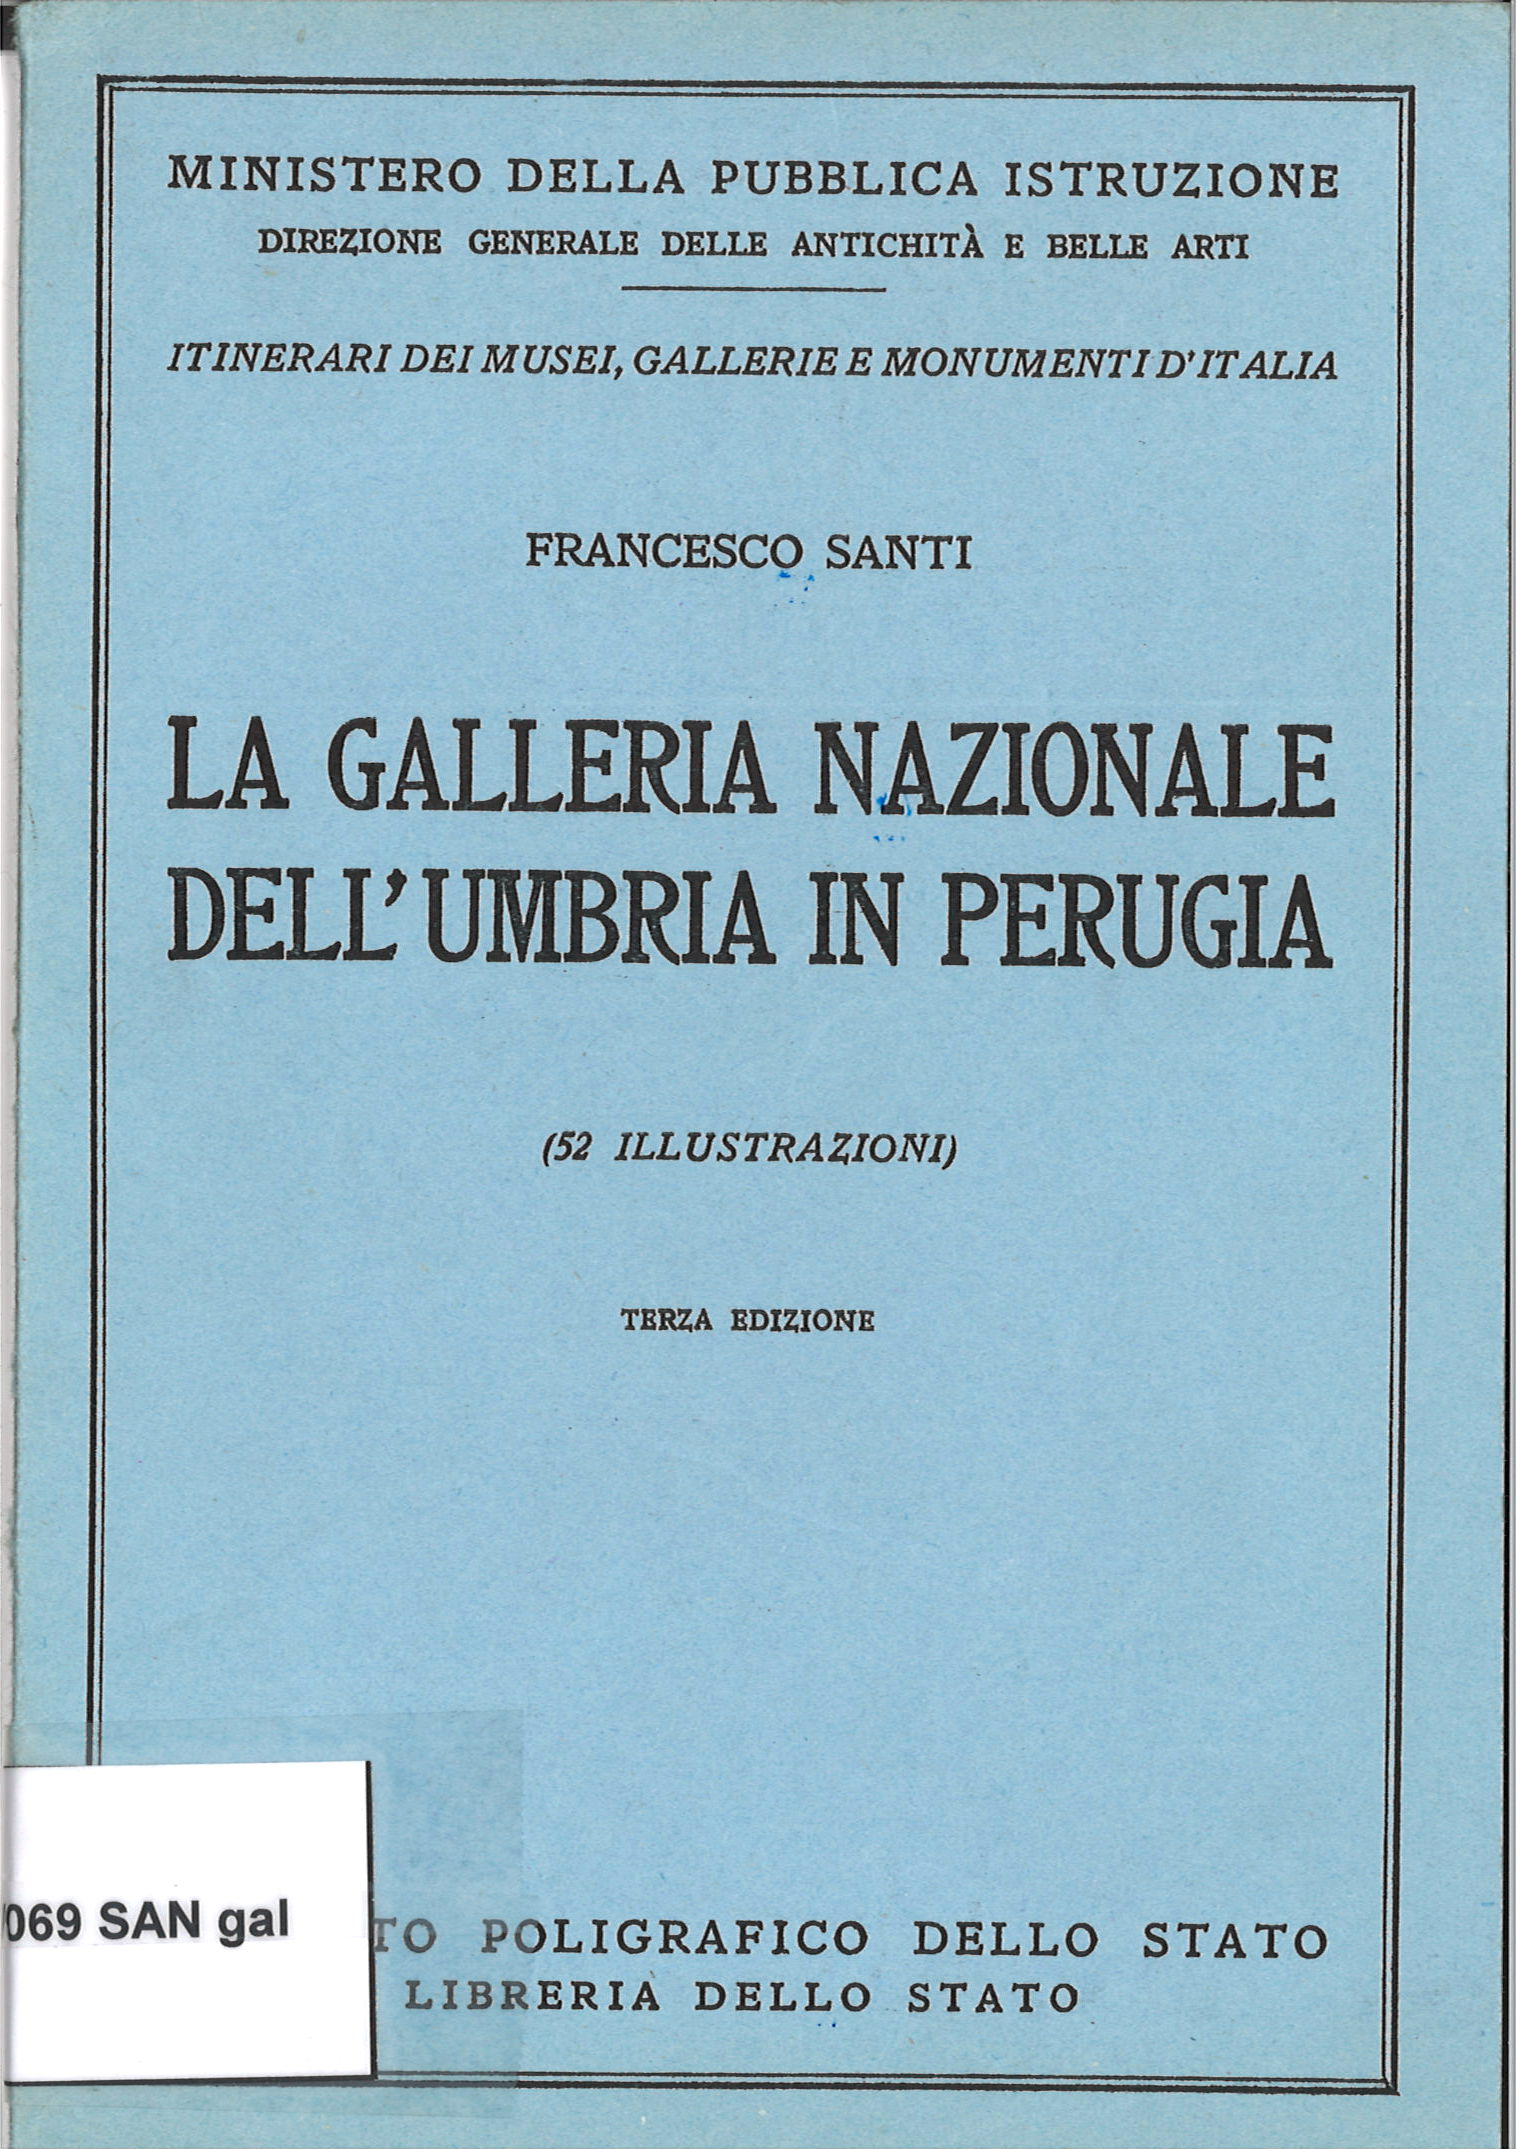 La Galleria Nazionale dell´Umbria in Perugia-Francesco Santi-image